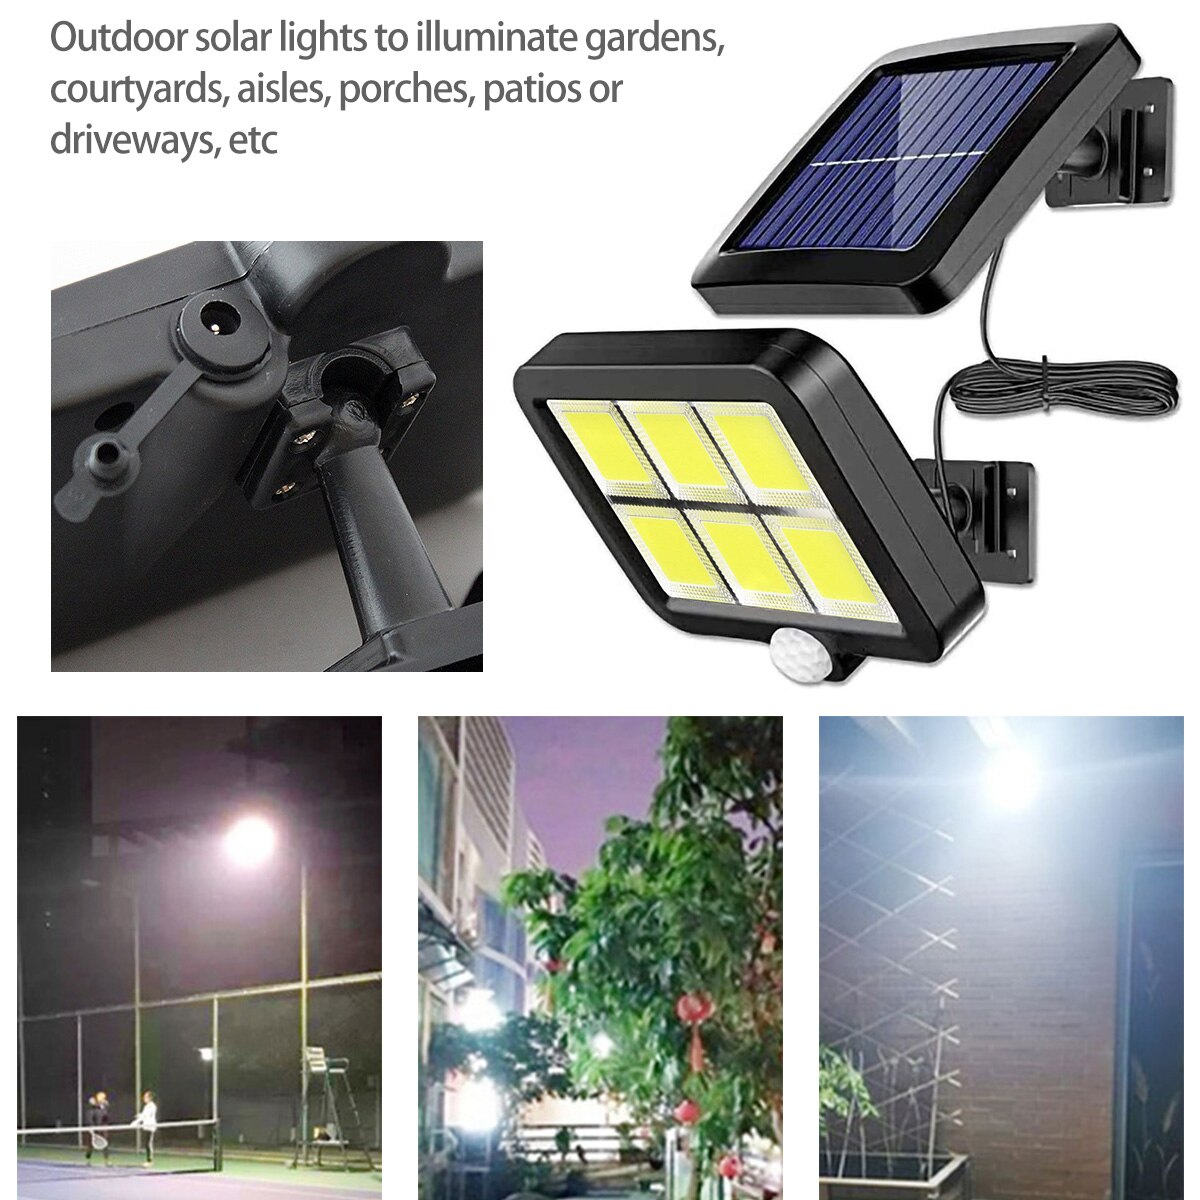 120COB Solar Street Light Motion Sensor Solar Light with 5m Extension Cord Indoor and Outdoor Lighting Wall Light Spotlight Moorescarts